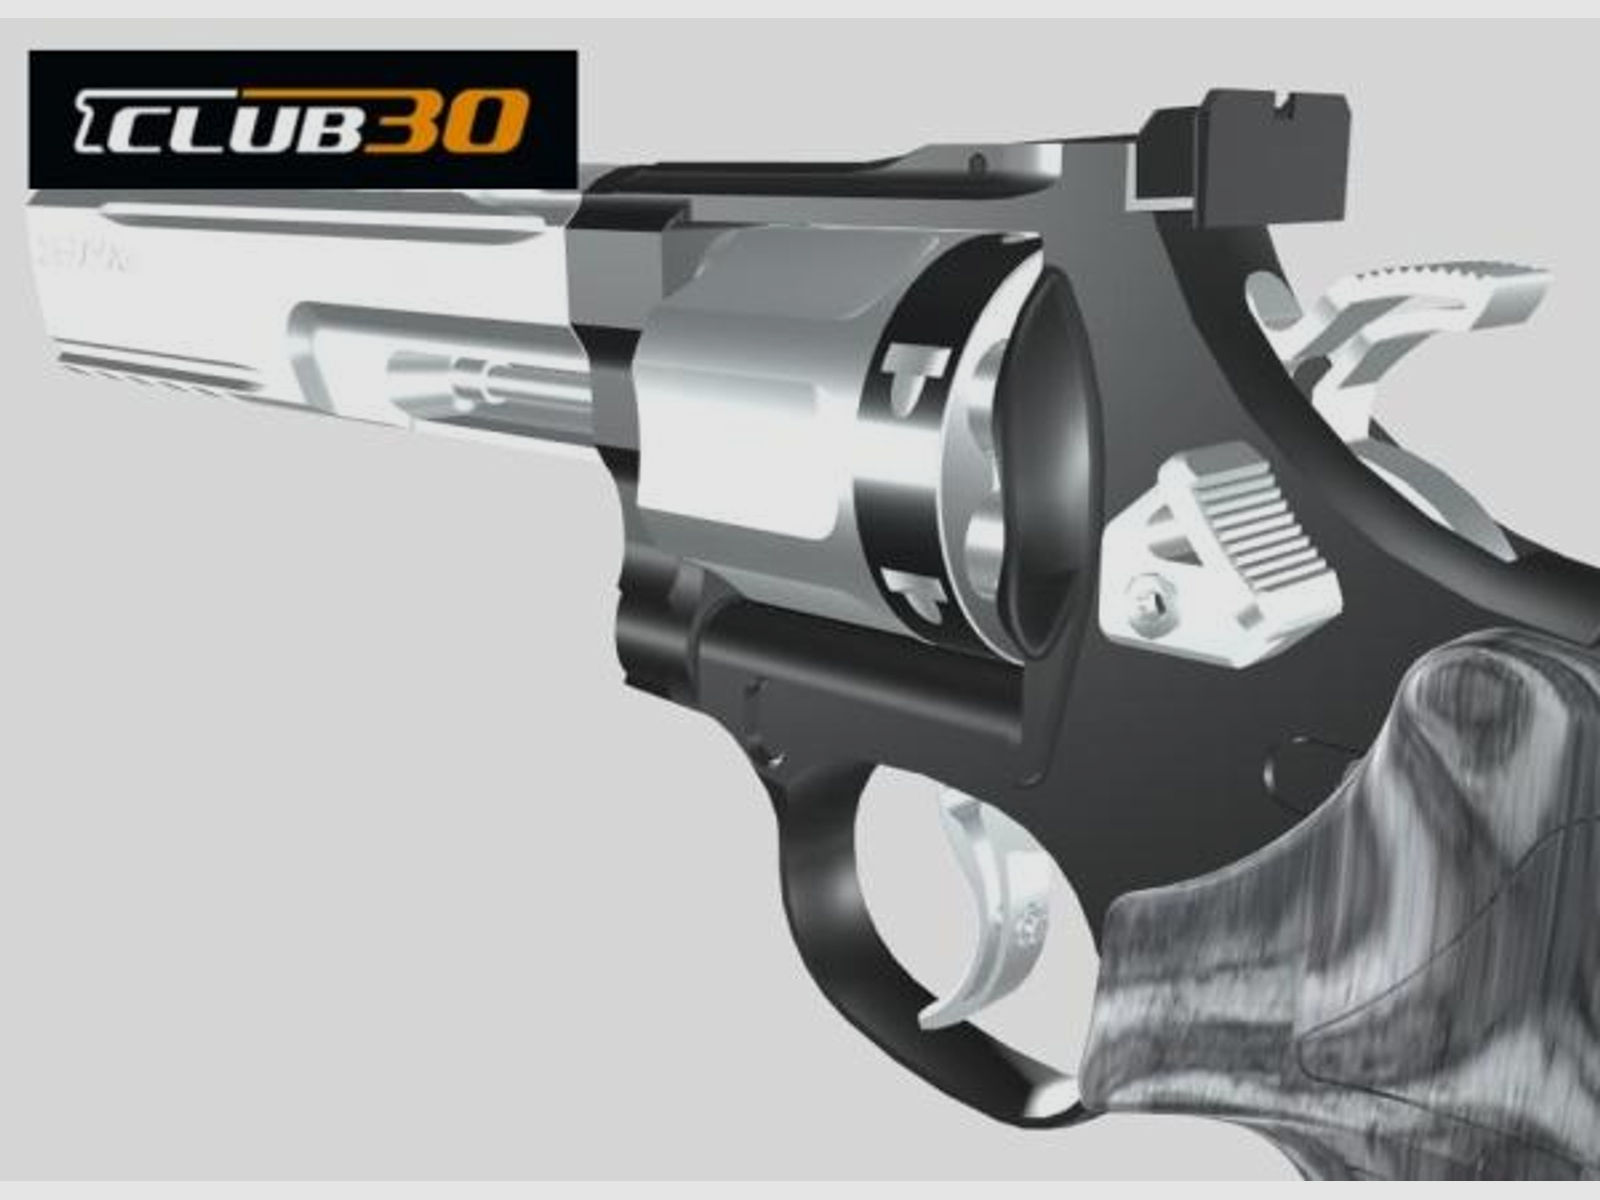 CLUB 30 Tuning/Ersatzteil f. Revolver Trommelschieber S&W u.a. LX,   stainless